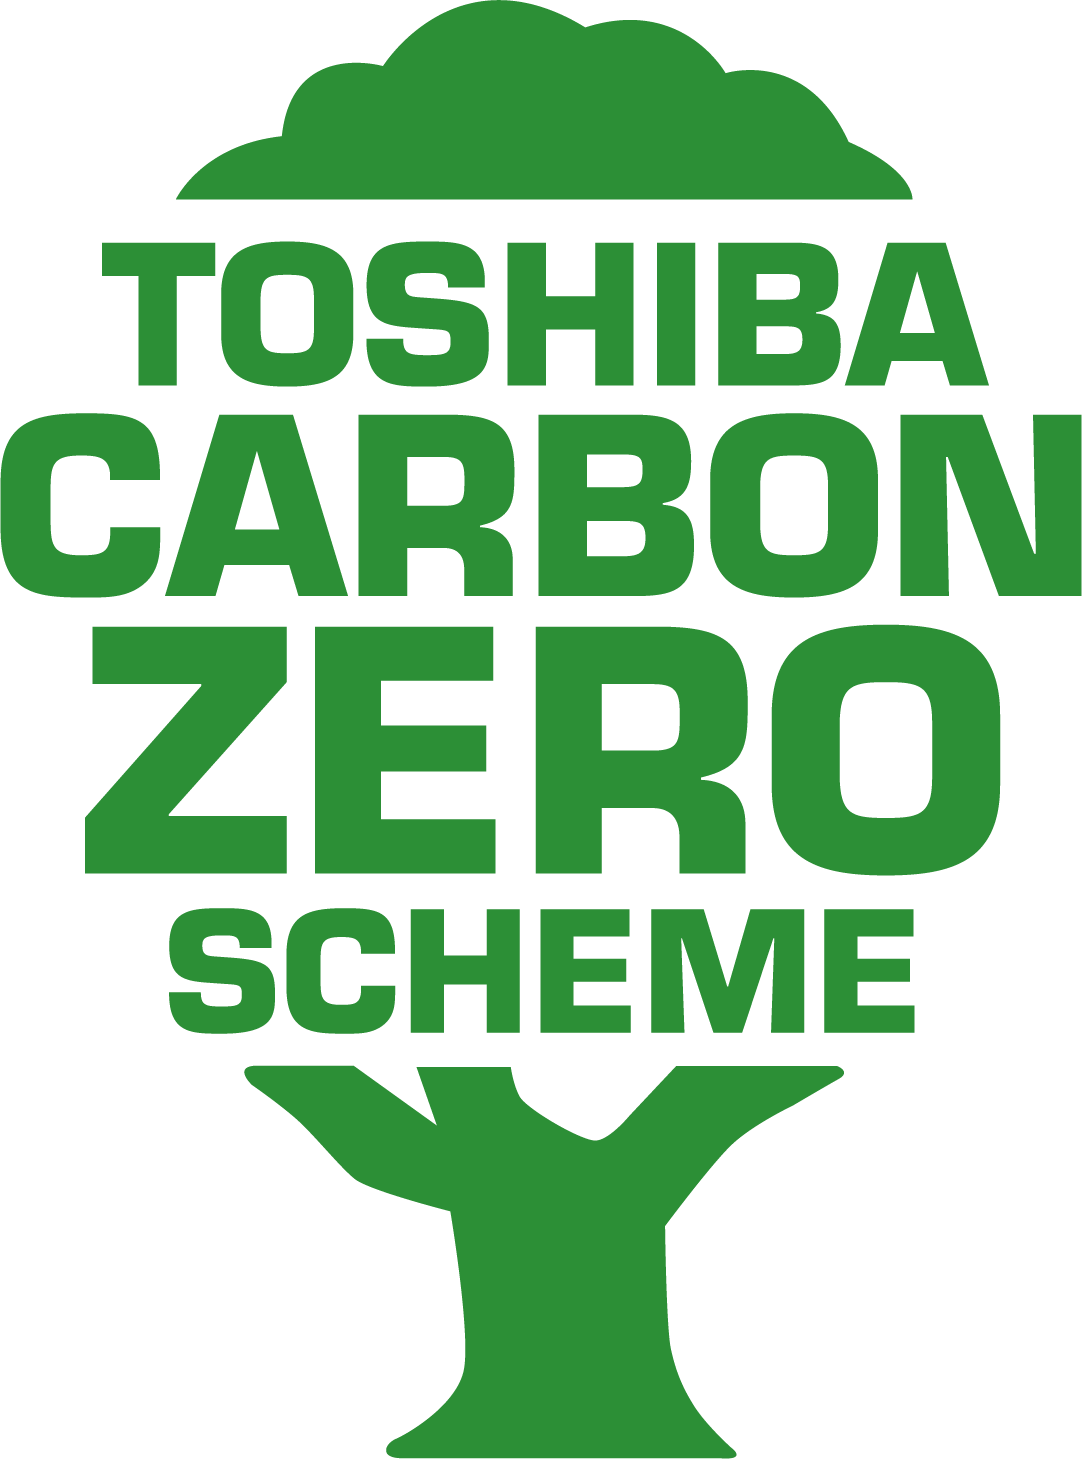 Toshiba ya ha compensado 635.000 toneladas de CO2 en su contribución a los ODS de Naciones Unidas